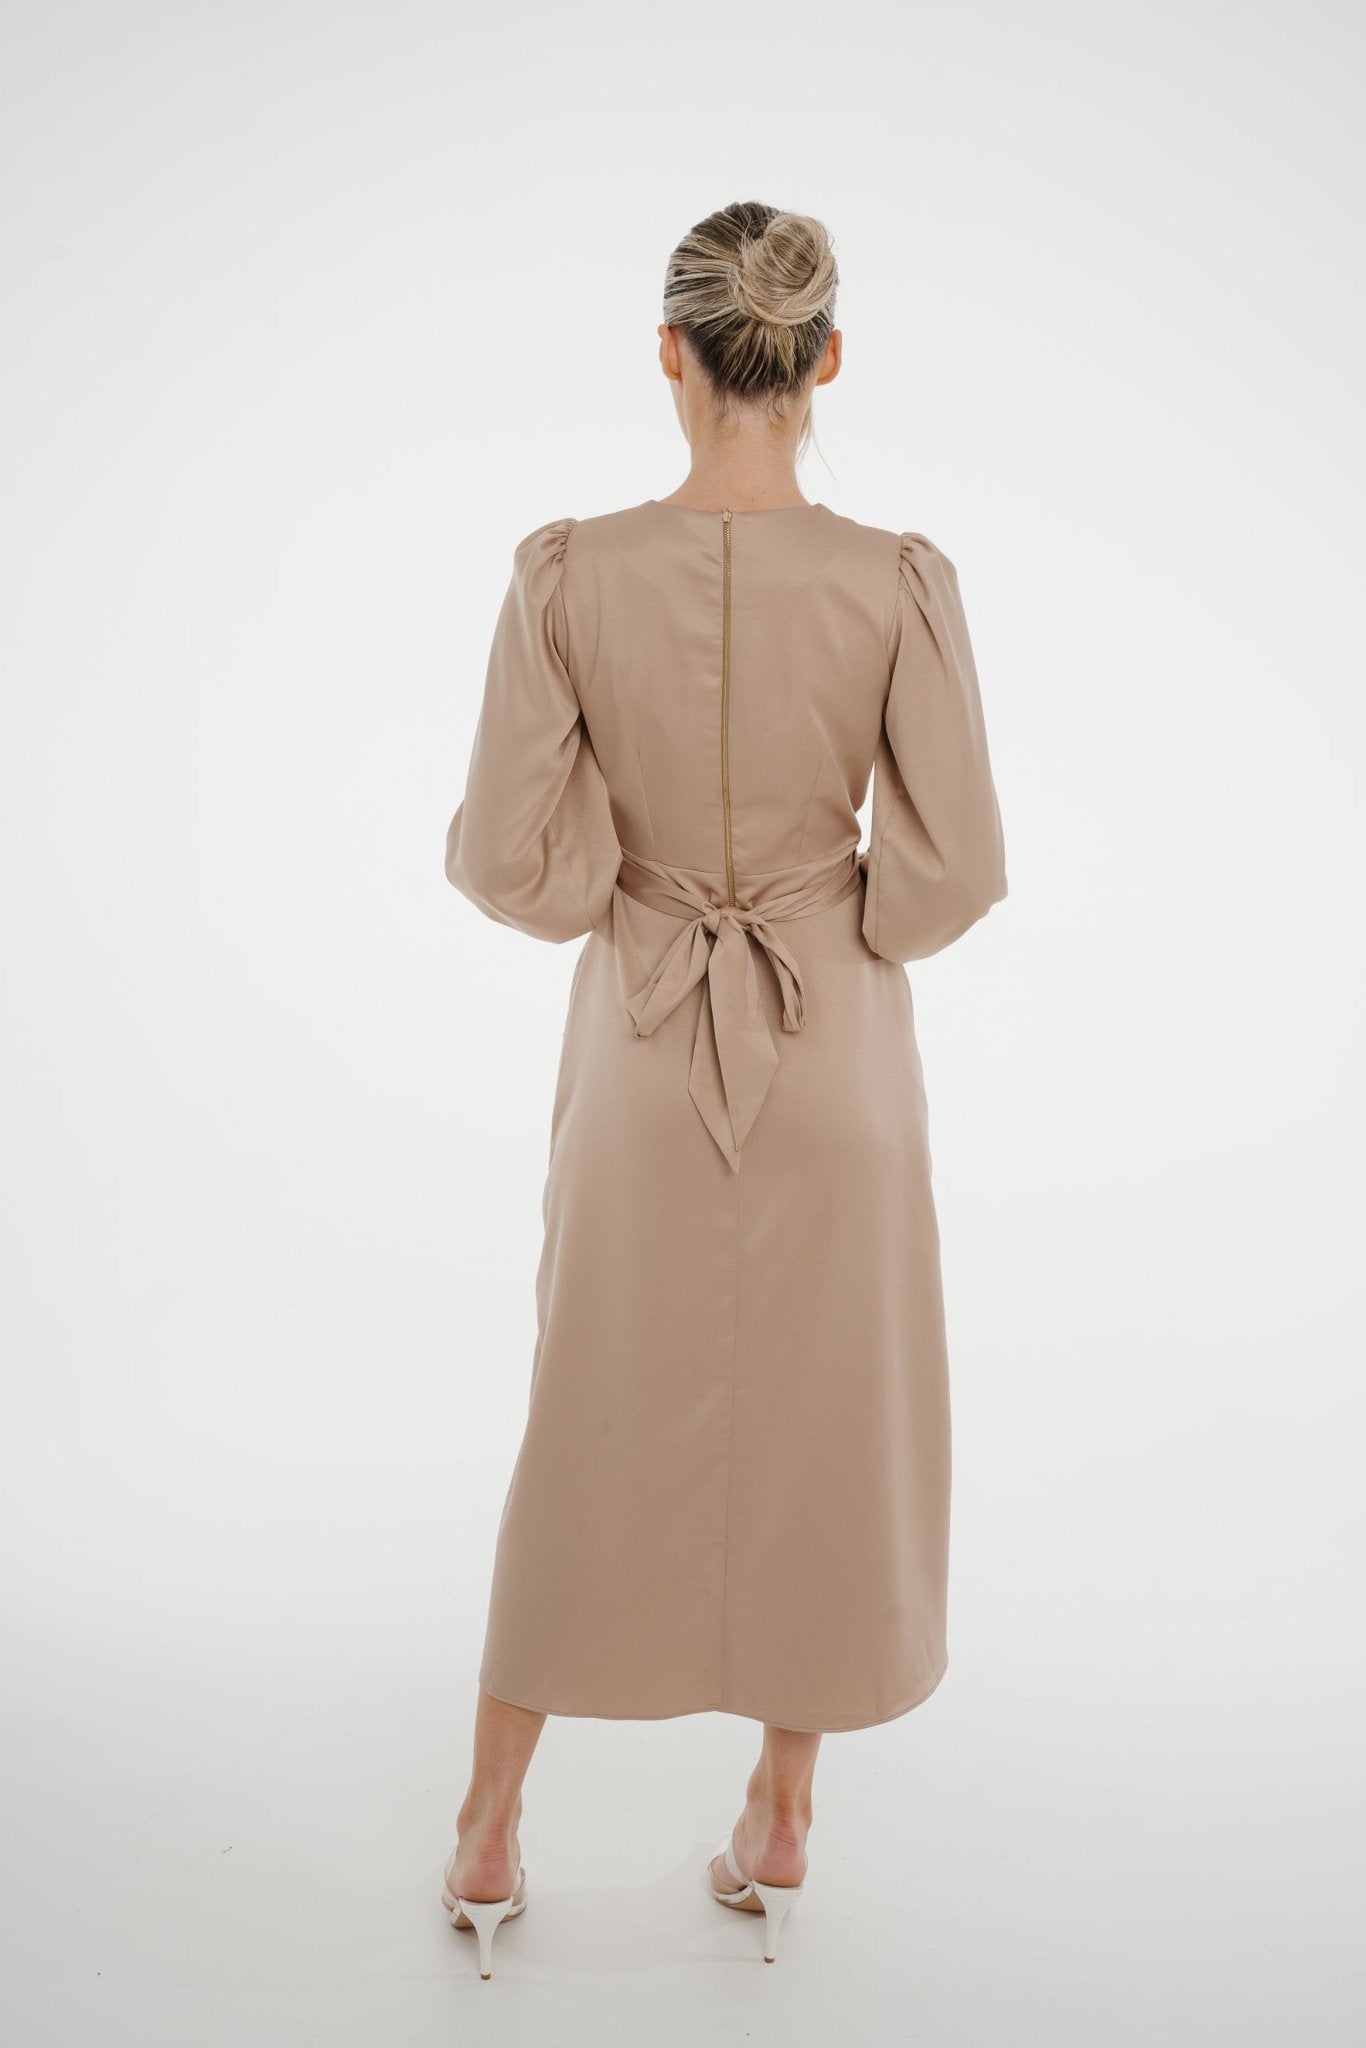 Celine A-Line Satin Mix Dress In Mocha - The Walk in Wardrobe